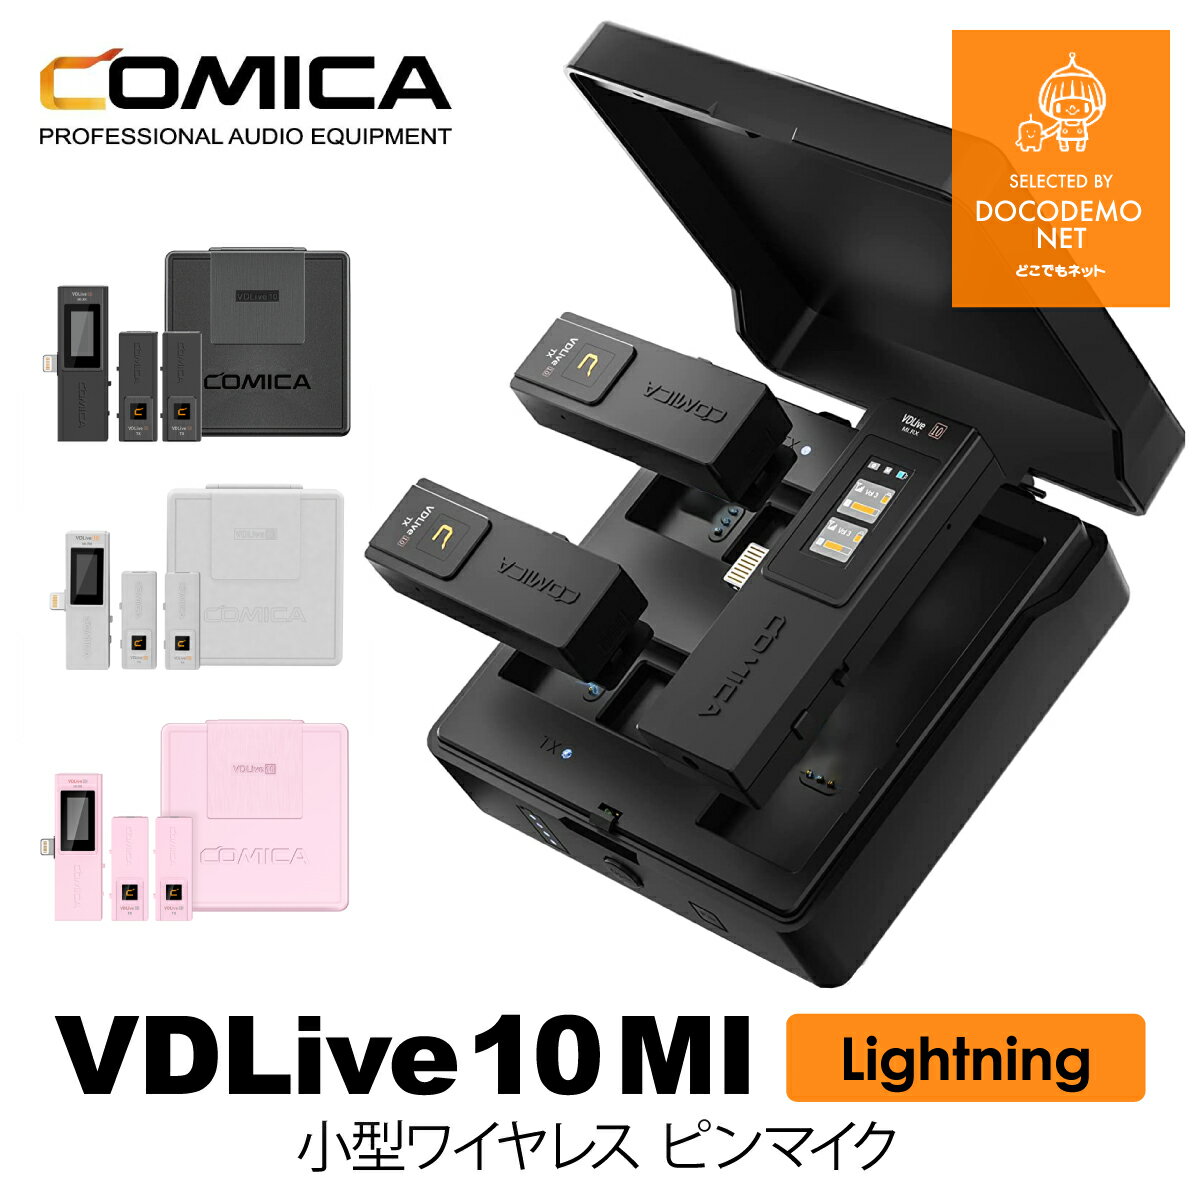 COMICA VDLive10 MI スマホ外付けマイク iPhone用 ワイヤレスピンマイクシステム ライトニング lighting 一眼レフカ…